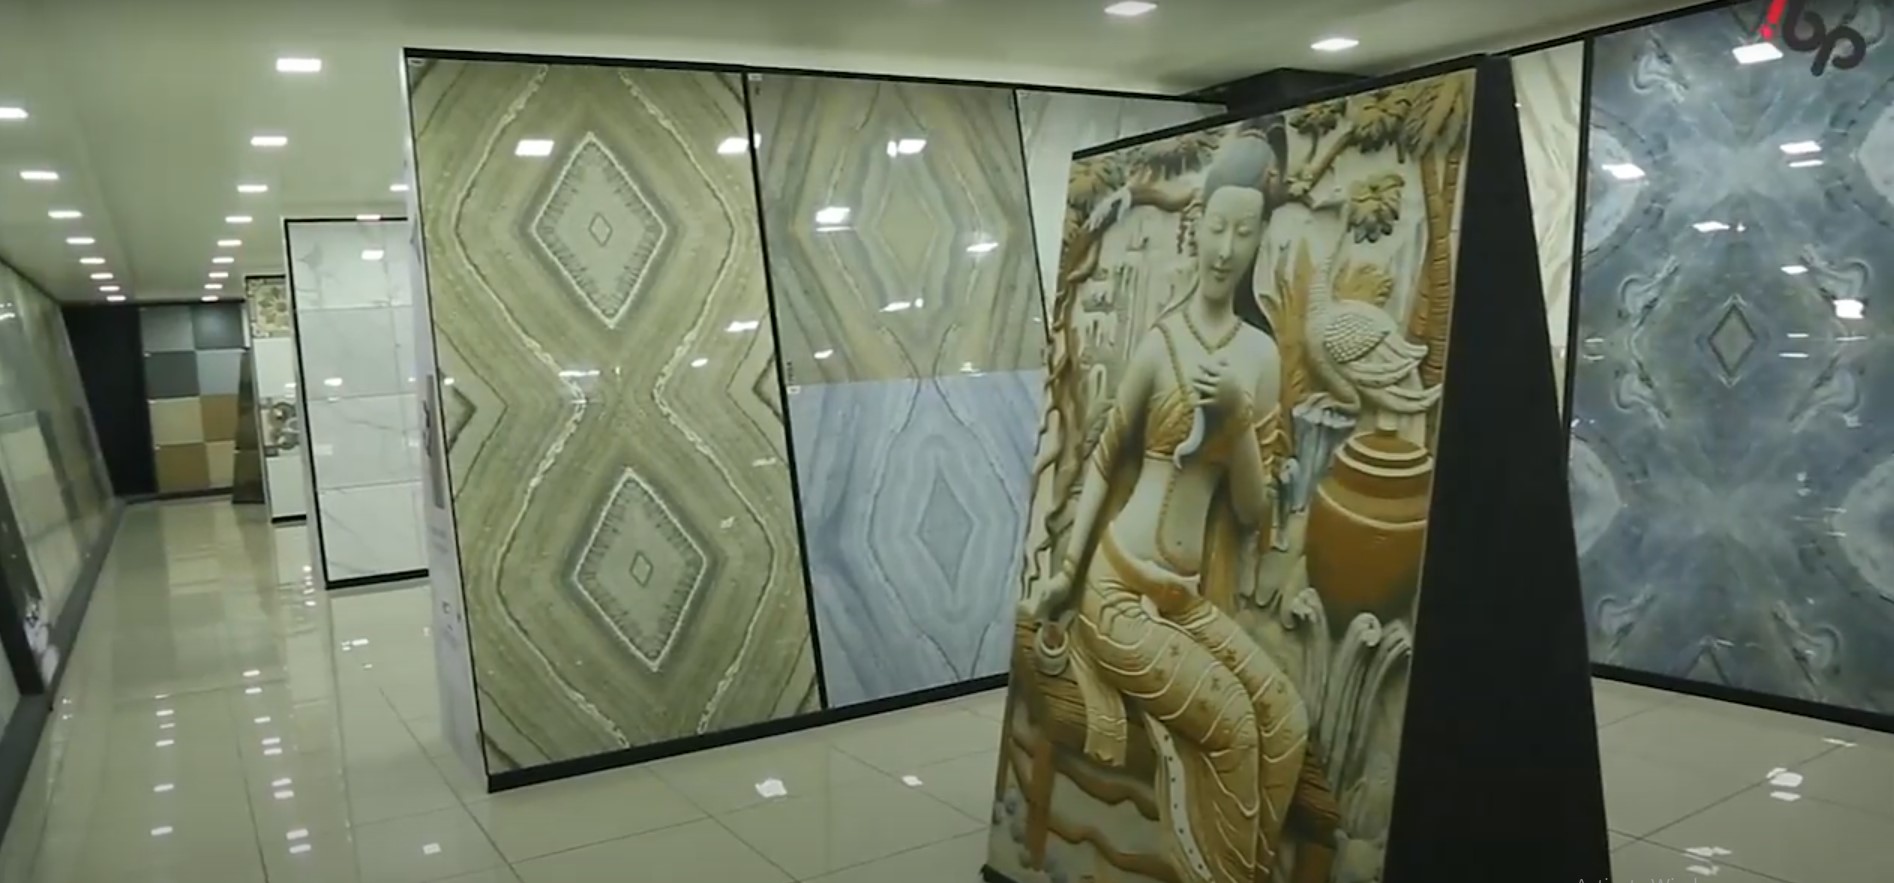 Skytouch Ceramic Floor Tiles